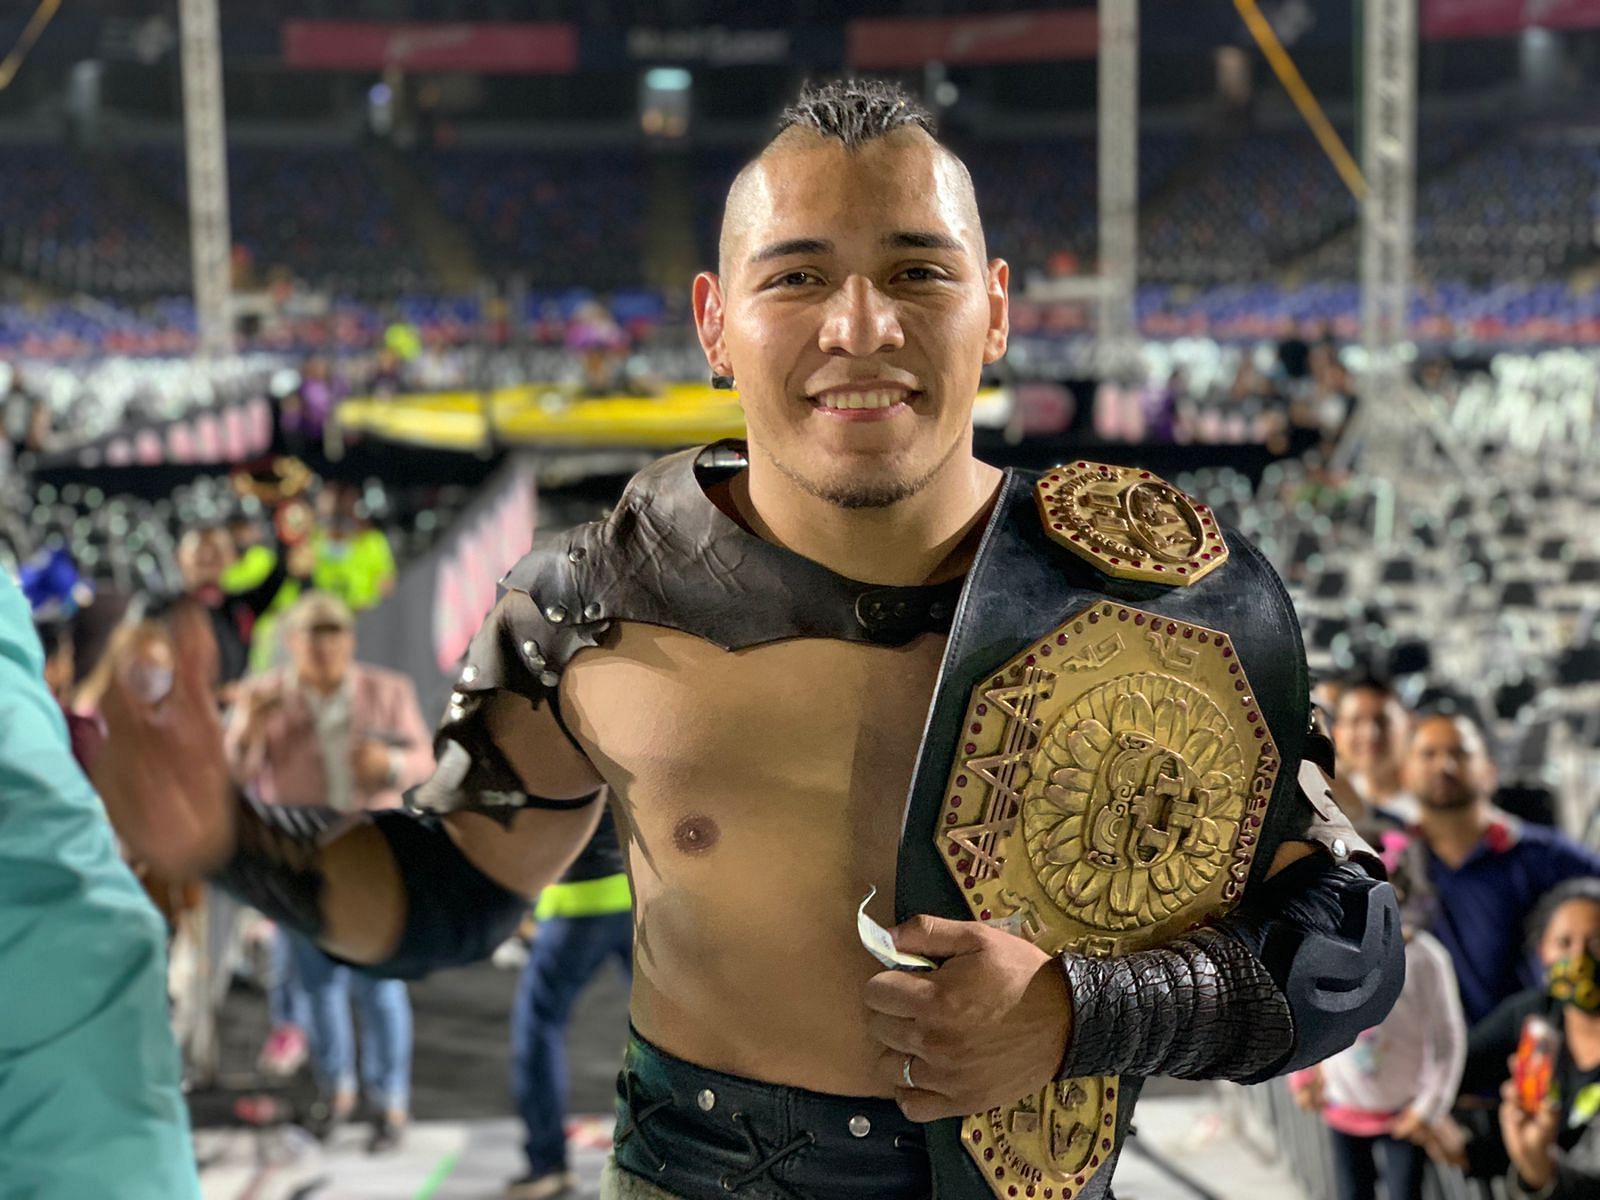 El Hijo del Vikingo is the current AAA Mega Champion